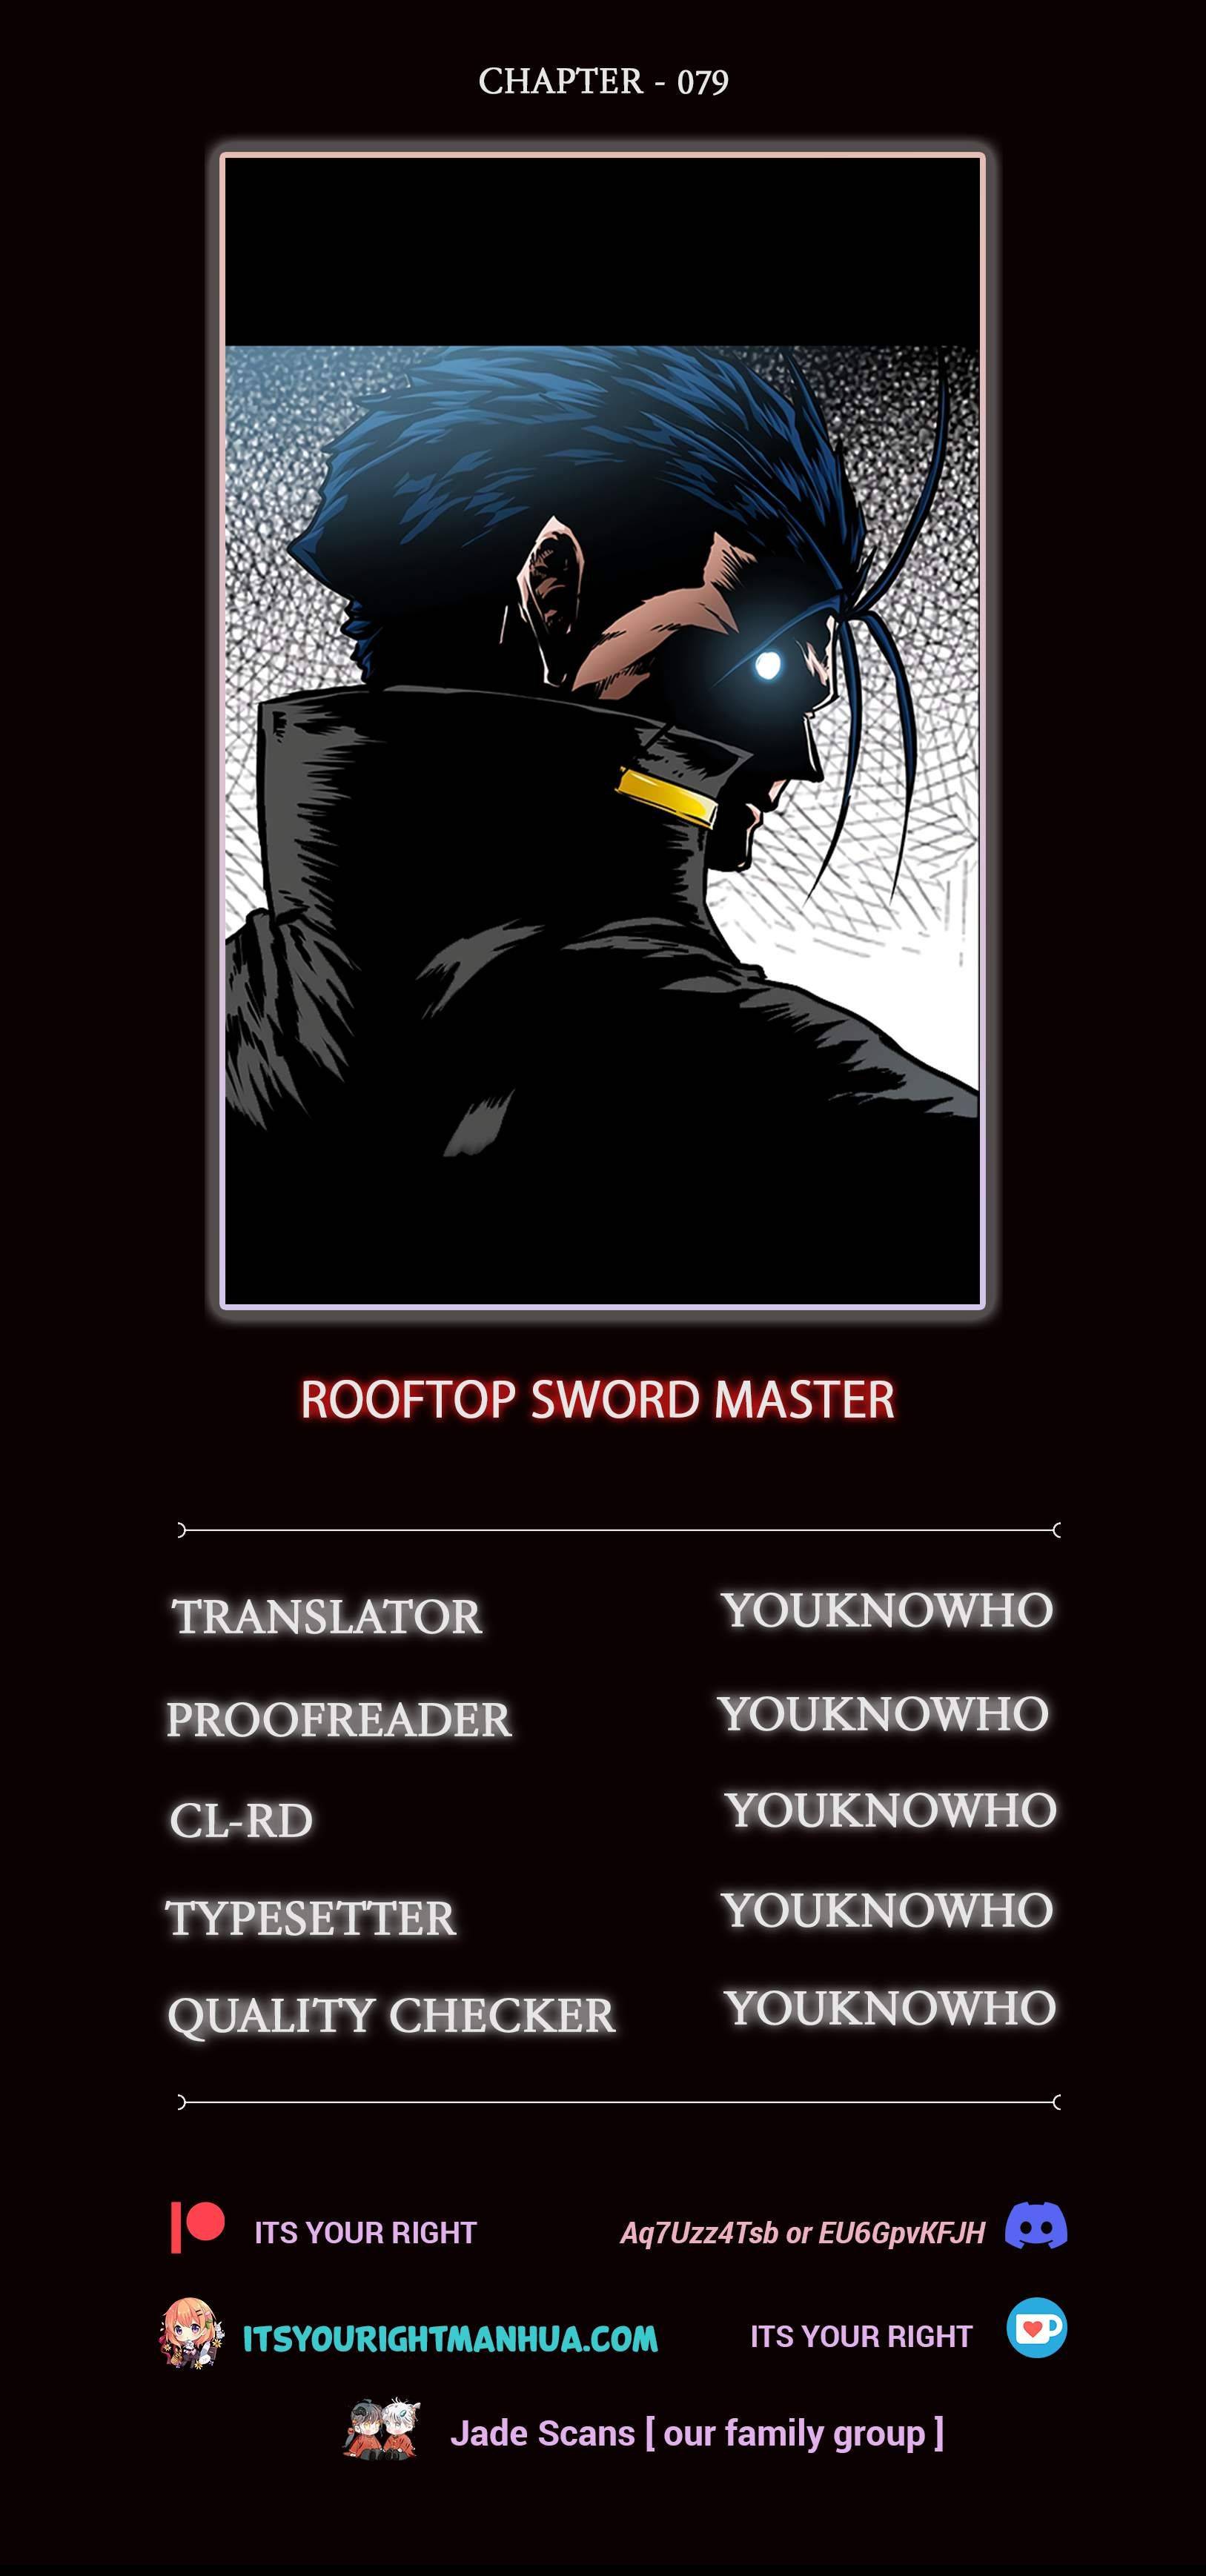 Rooftop Sword Master, Rooftop Sword Master manga, Rooftop Sword Master manhwa, Rooftop Sword Master anime, read Rooftop Sword Master